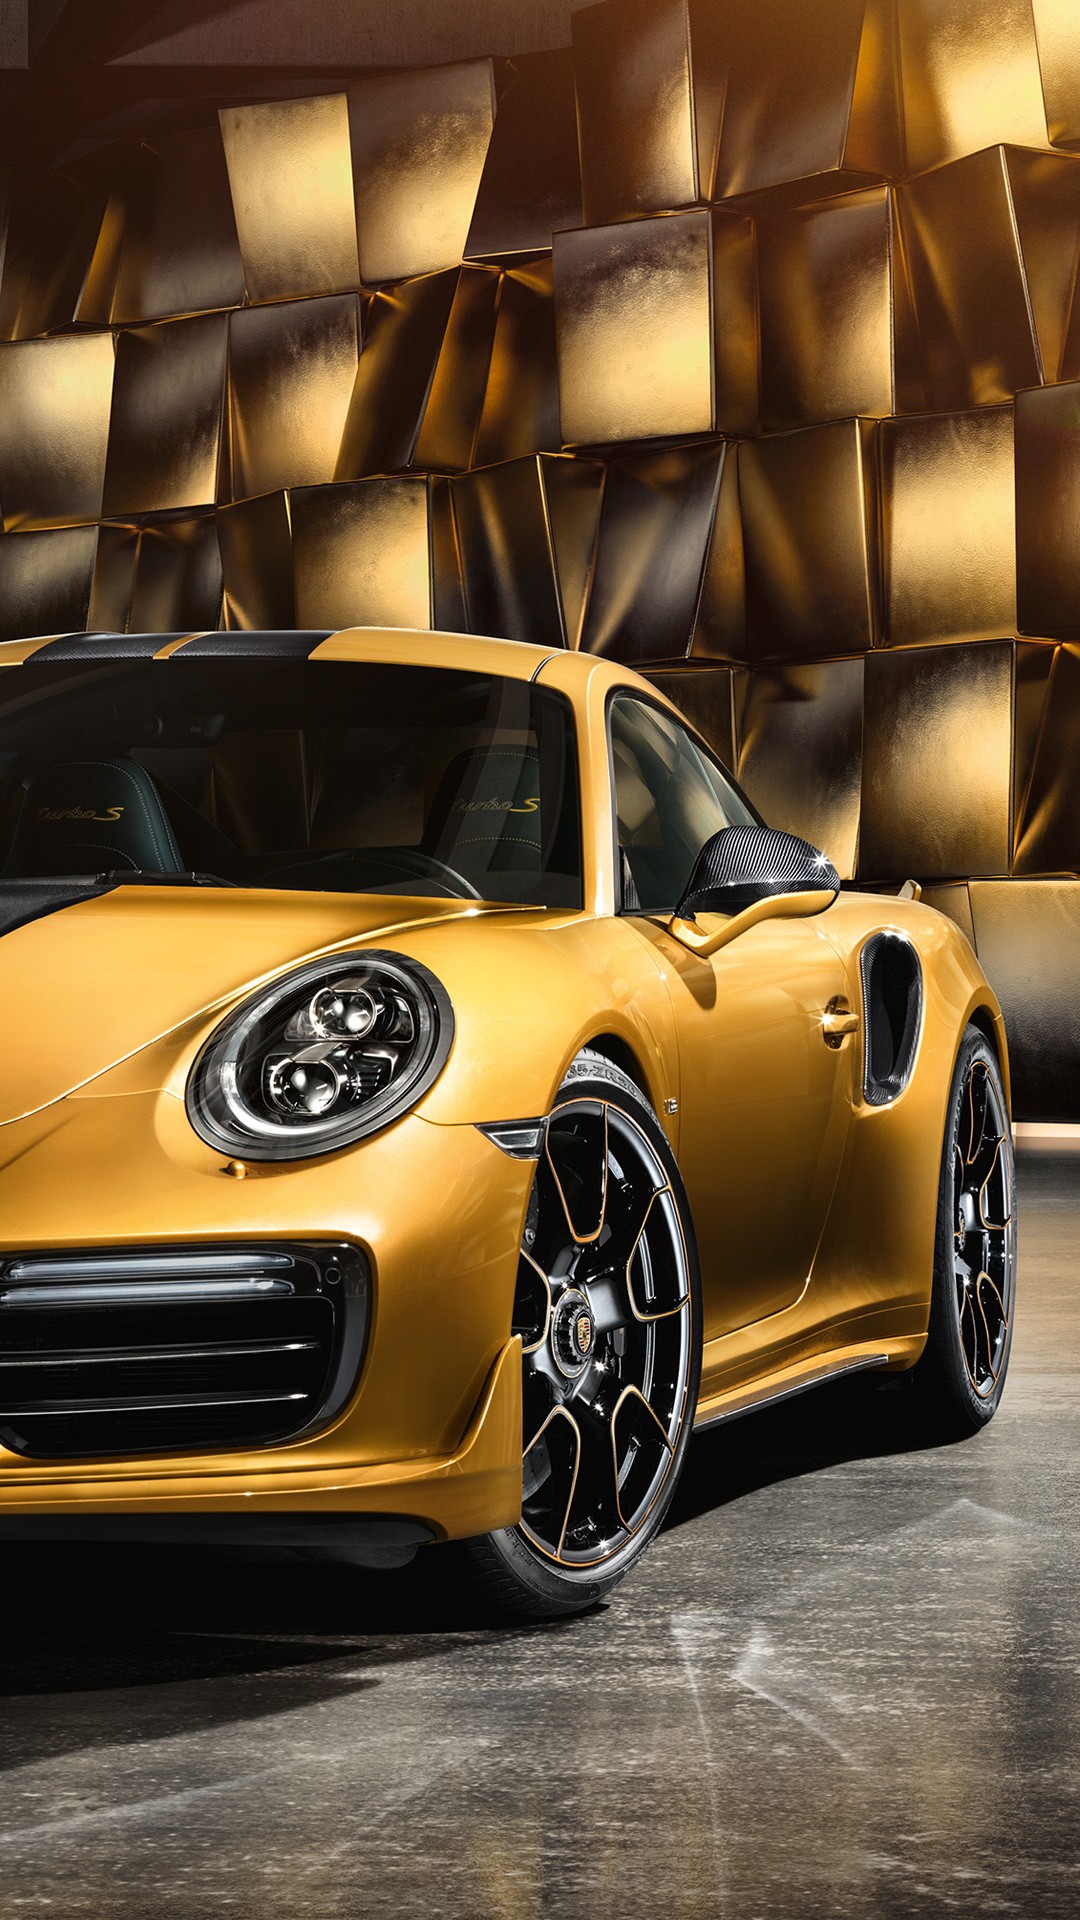 25 Years Porsche Exclusive Series Porsche 911 Turbo Wallpapers